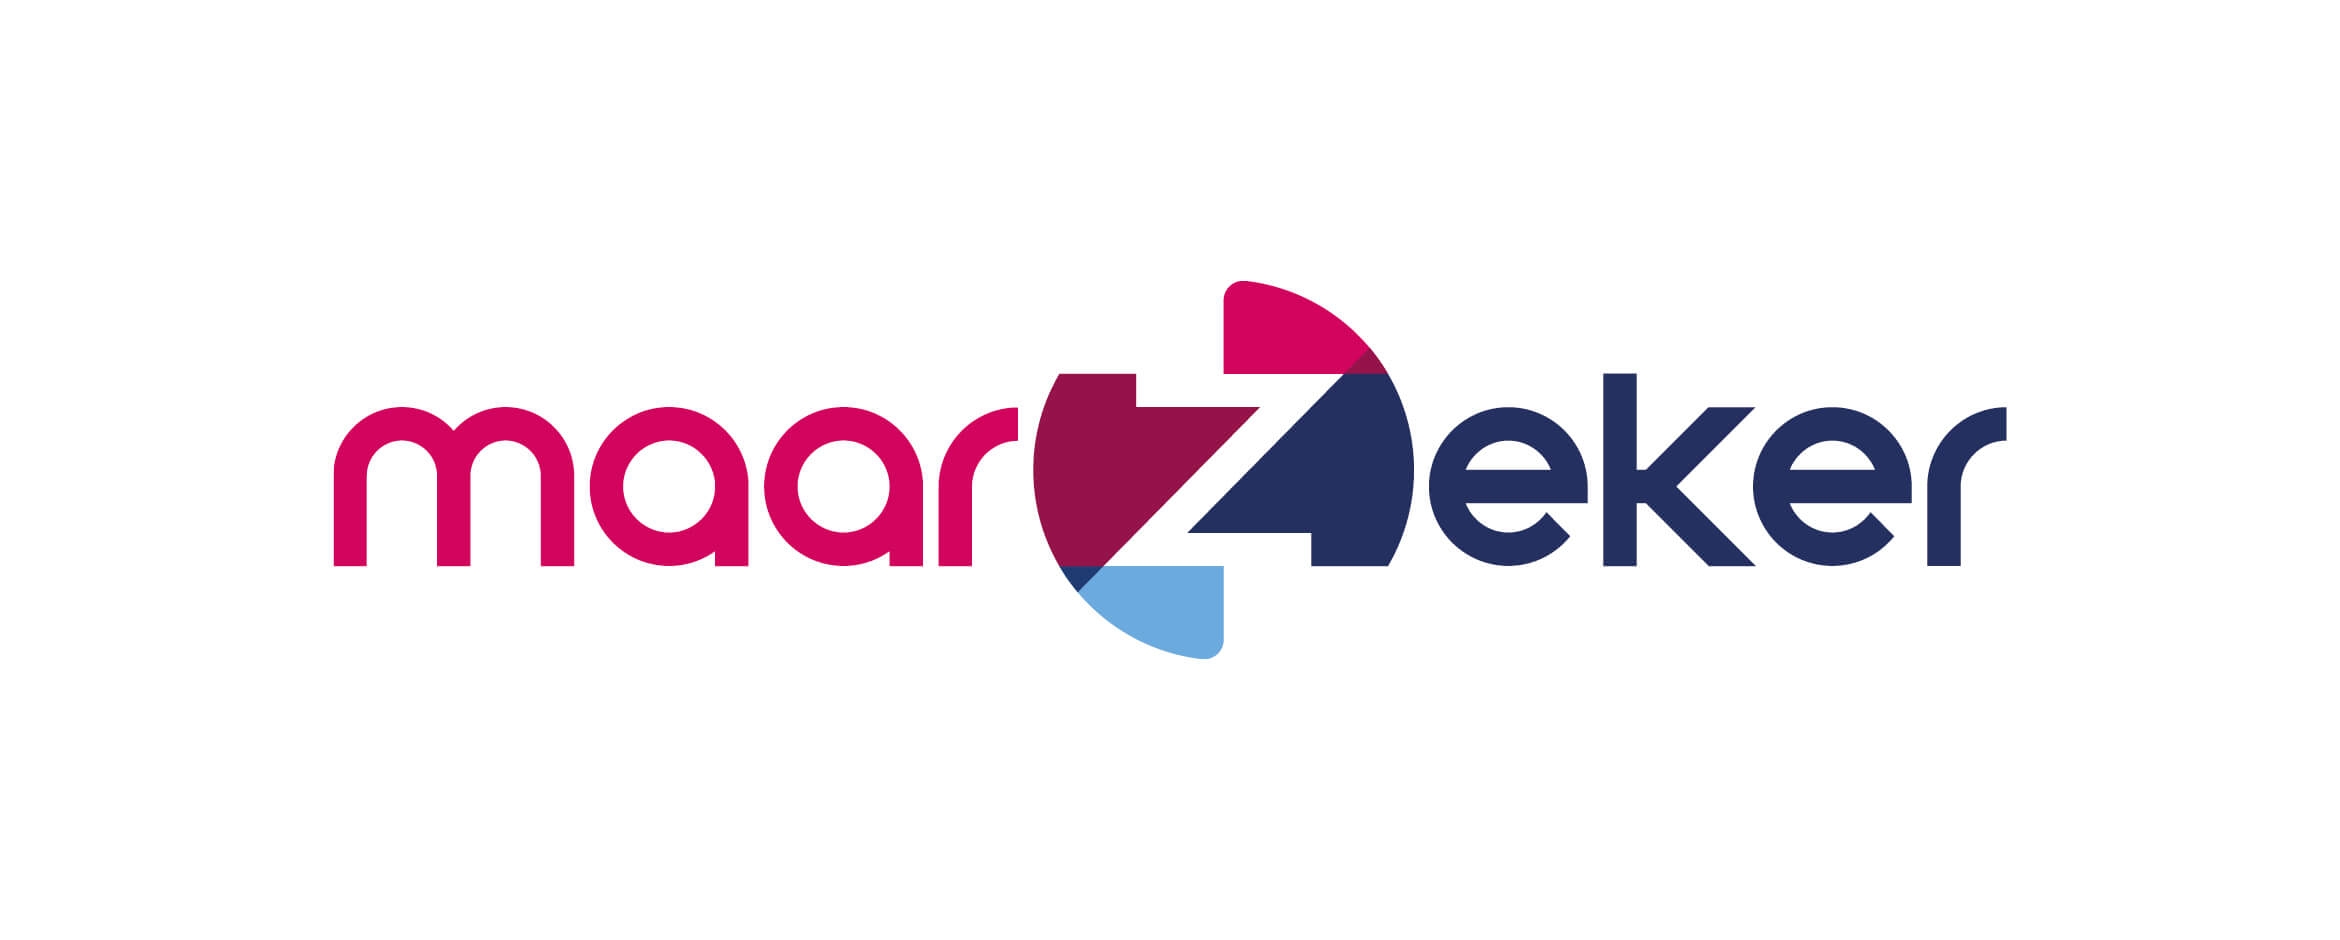 maarZeker logo